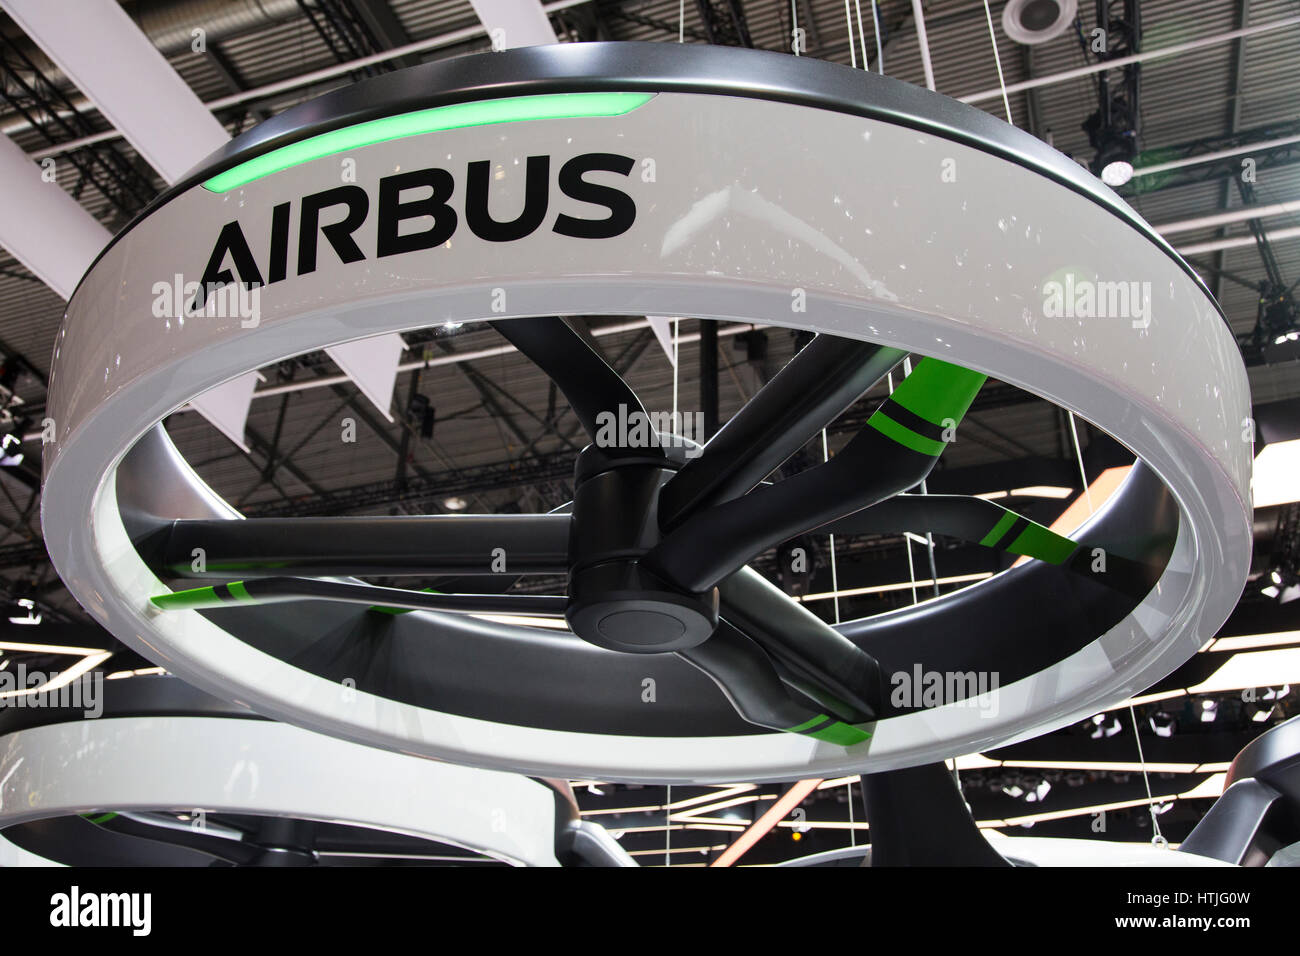 Foreman månedlige Uforudsete omstændigheder Airbus pop up hi-res stock photography and images - Alamy